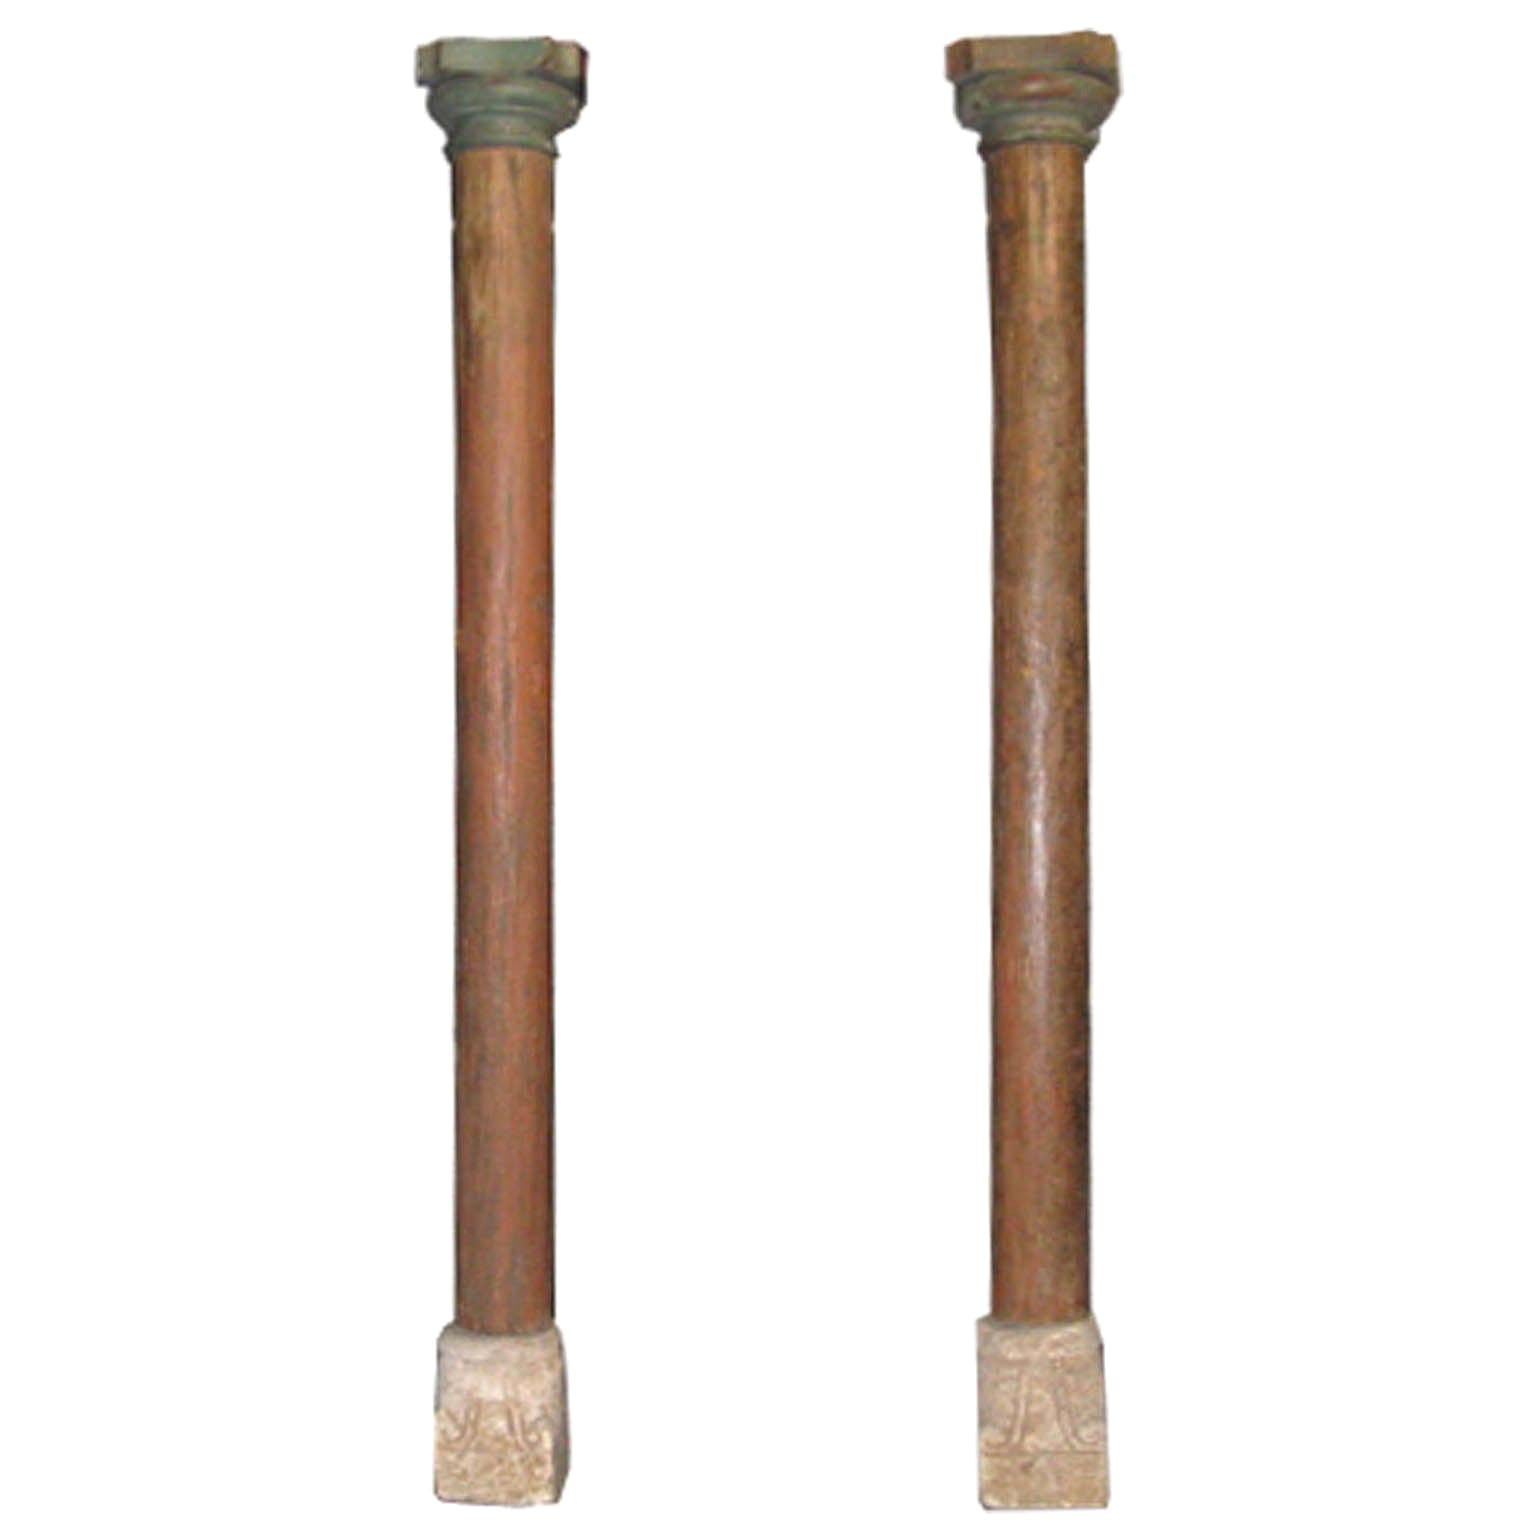 Pair of Wood Columns